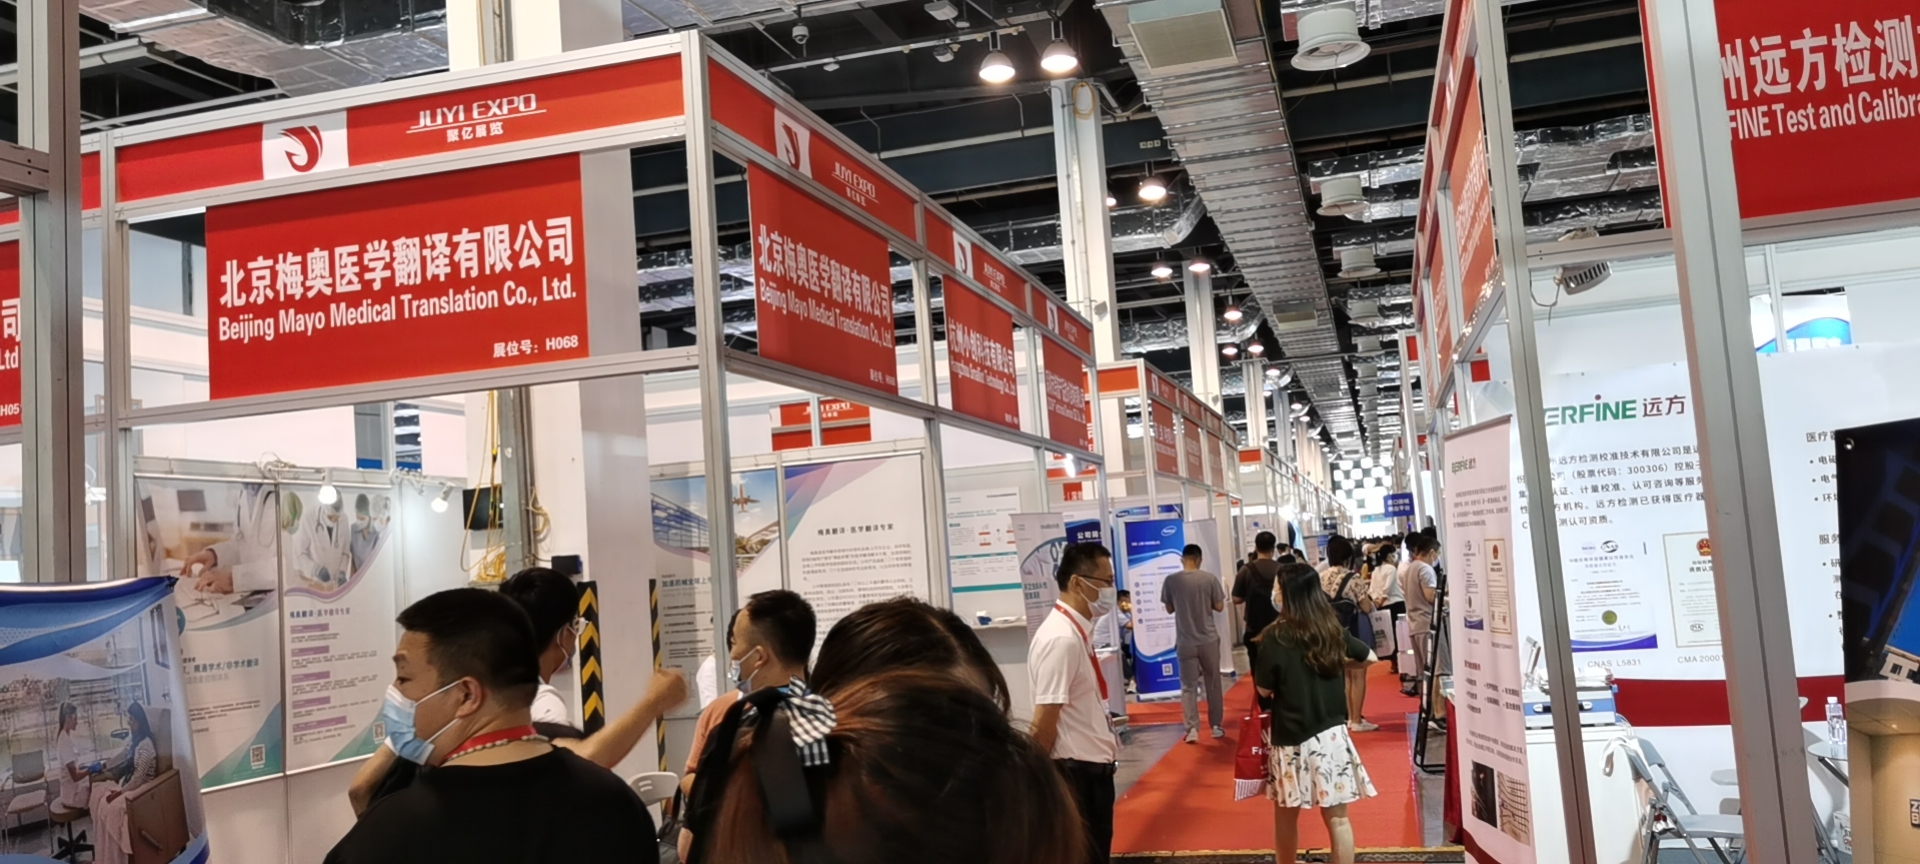 世联翻译子公司亮相上海国际医疗器械展览会